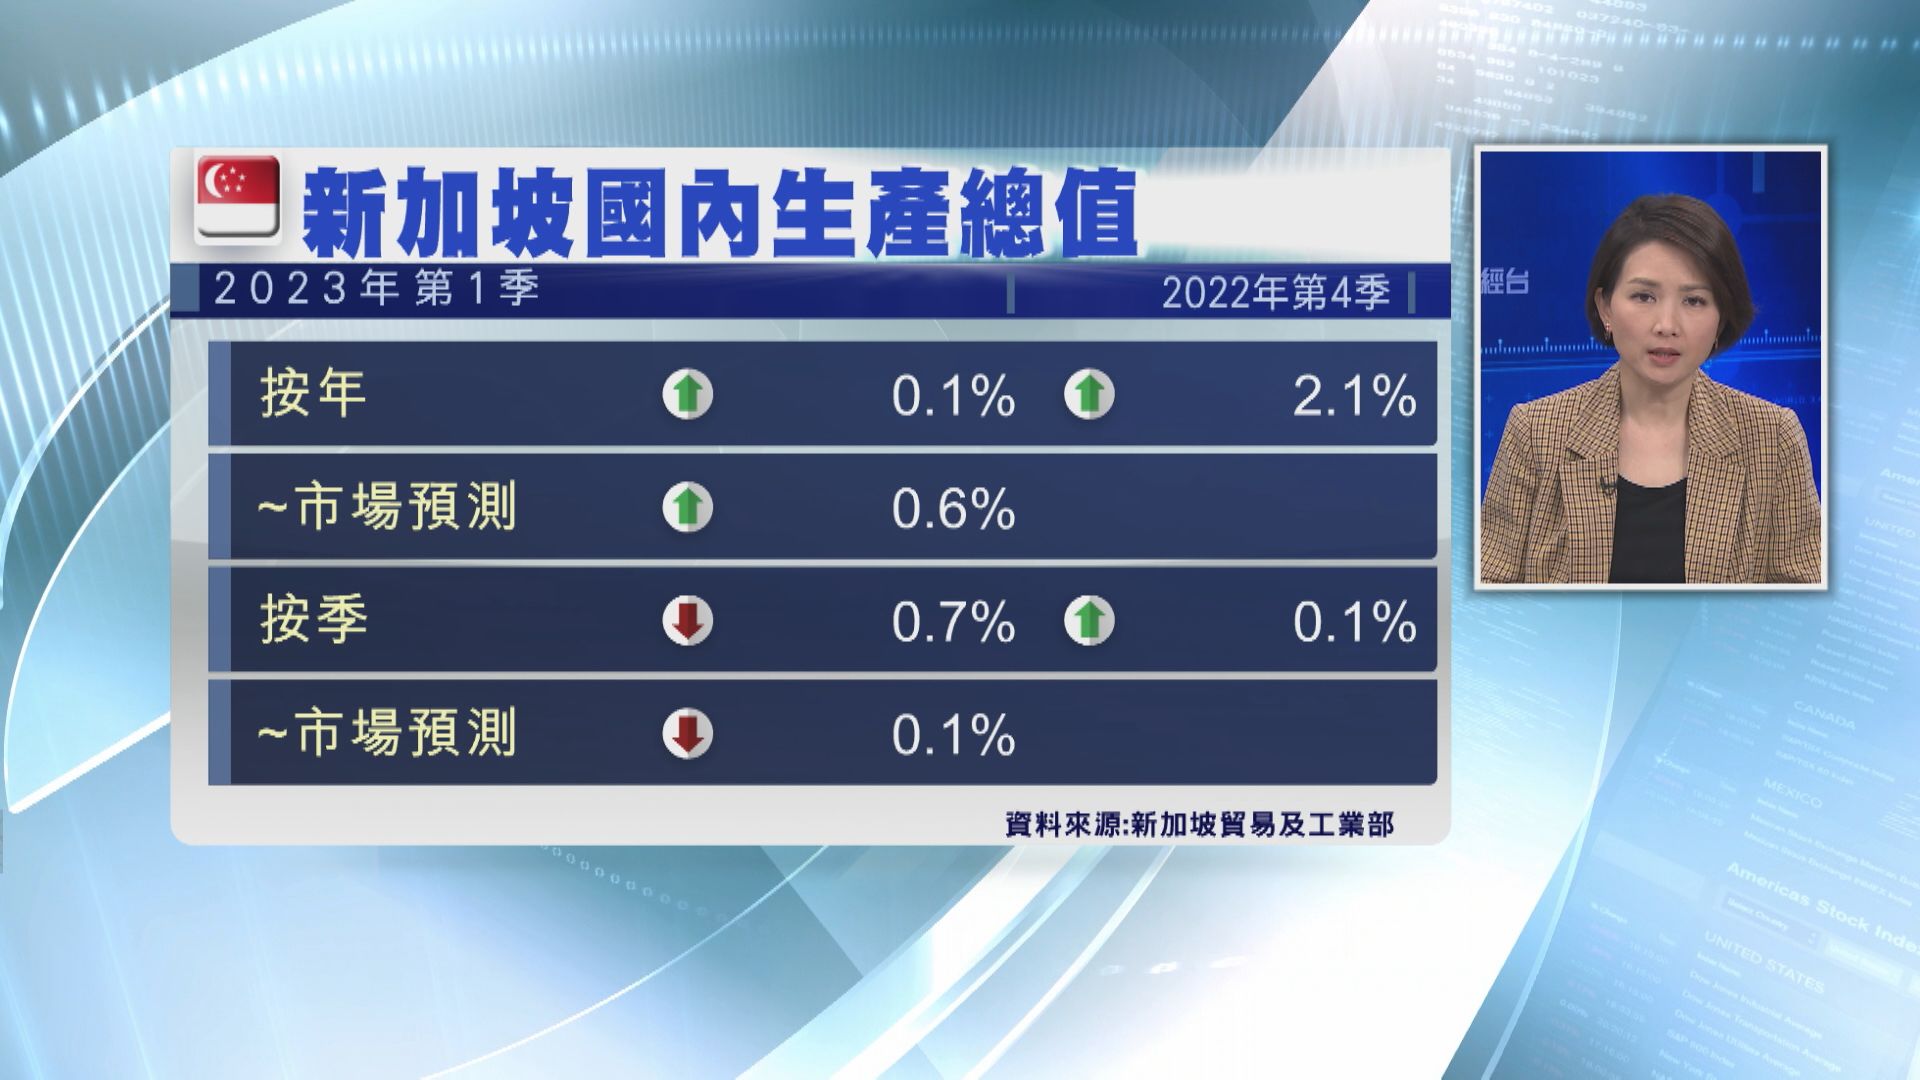 【前景黯淡】新加坡金管局:今年經濟增長或放緩至0.5%